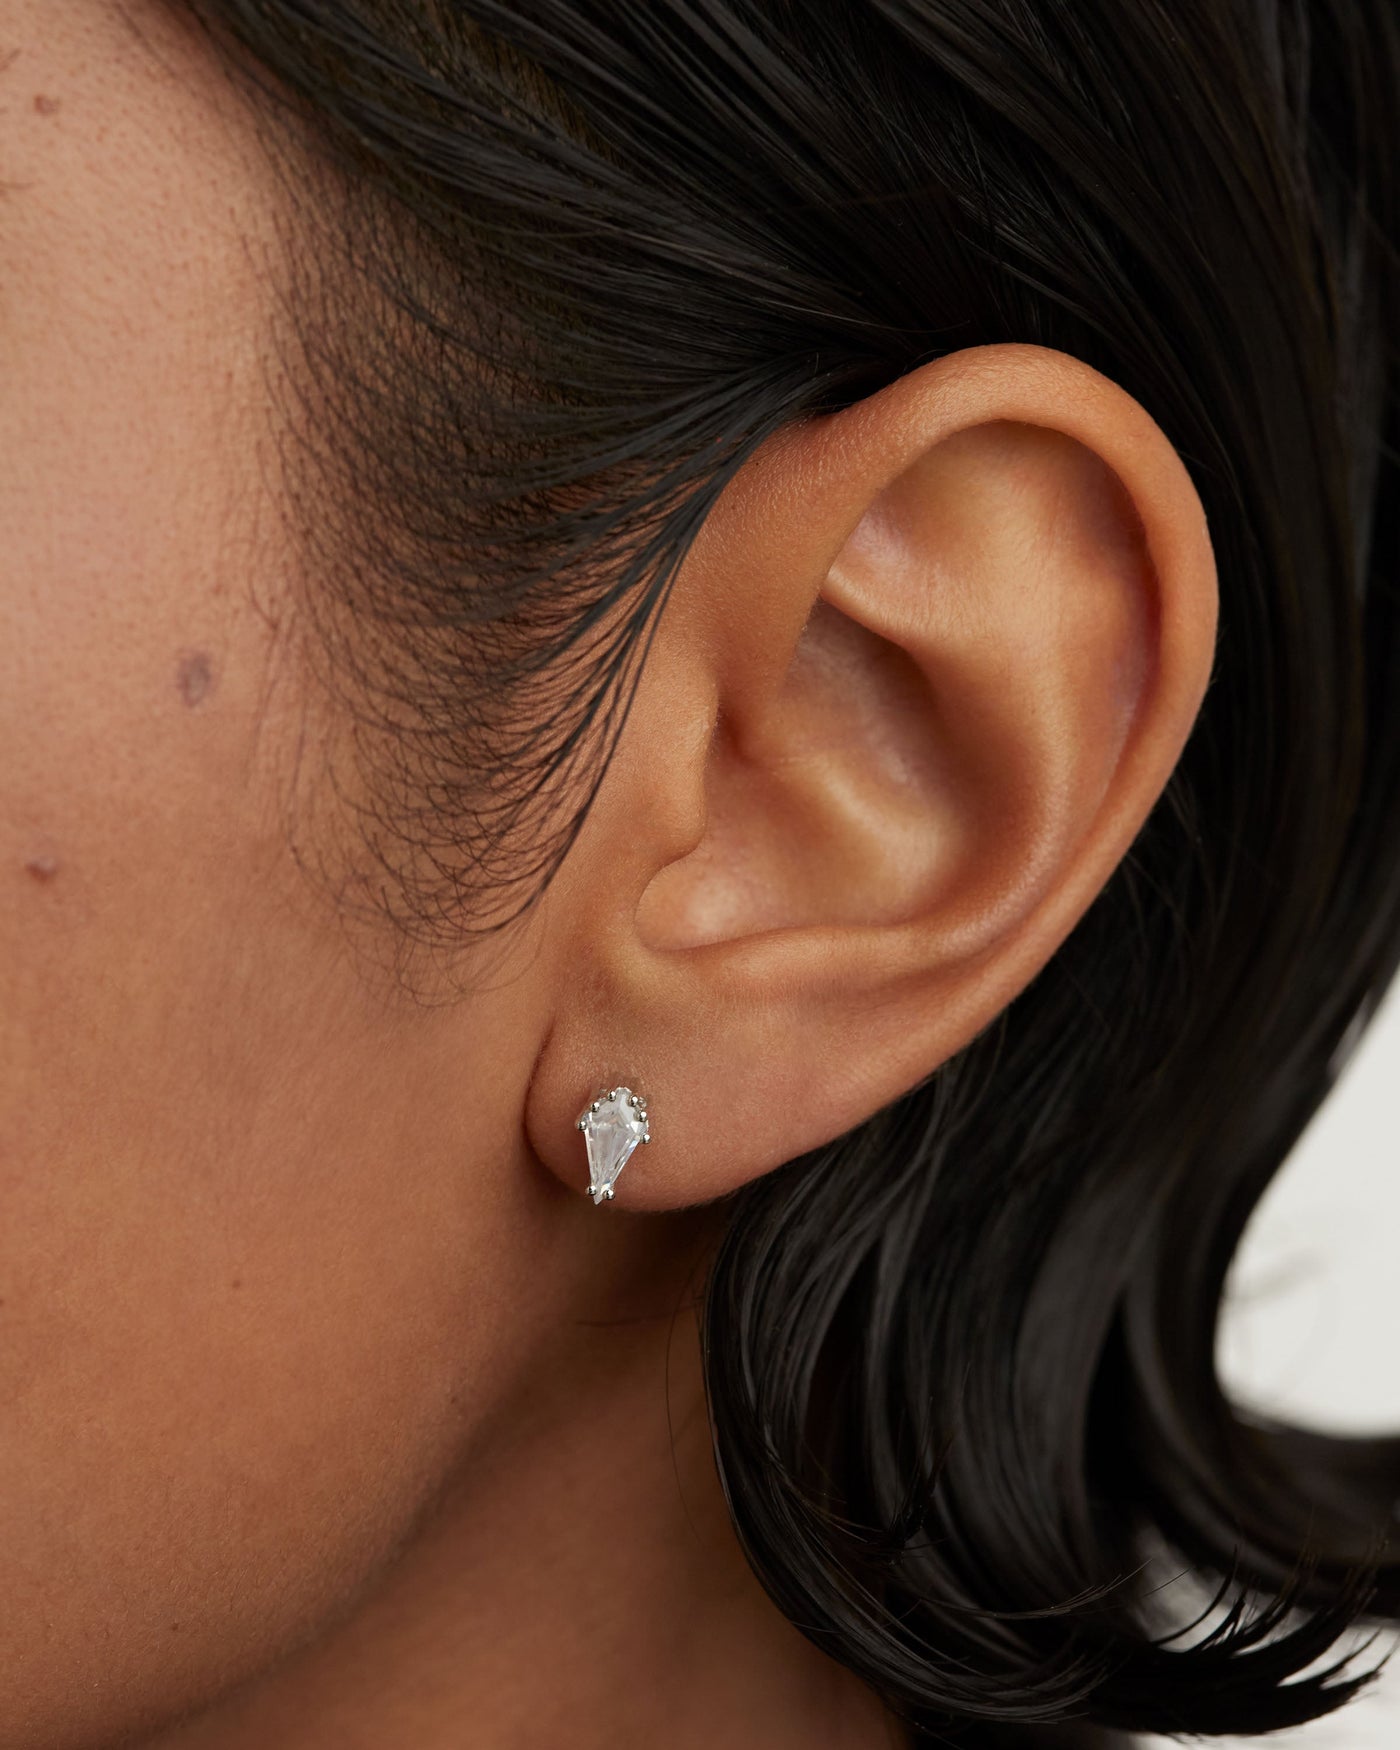 Crystal and zirconia  ear piercings